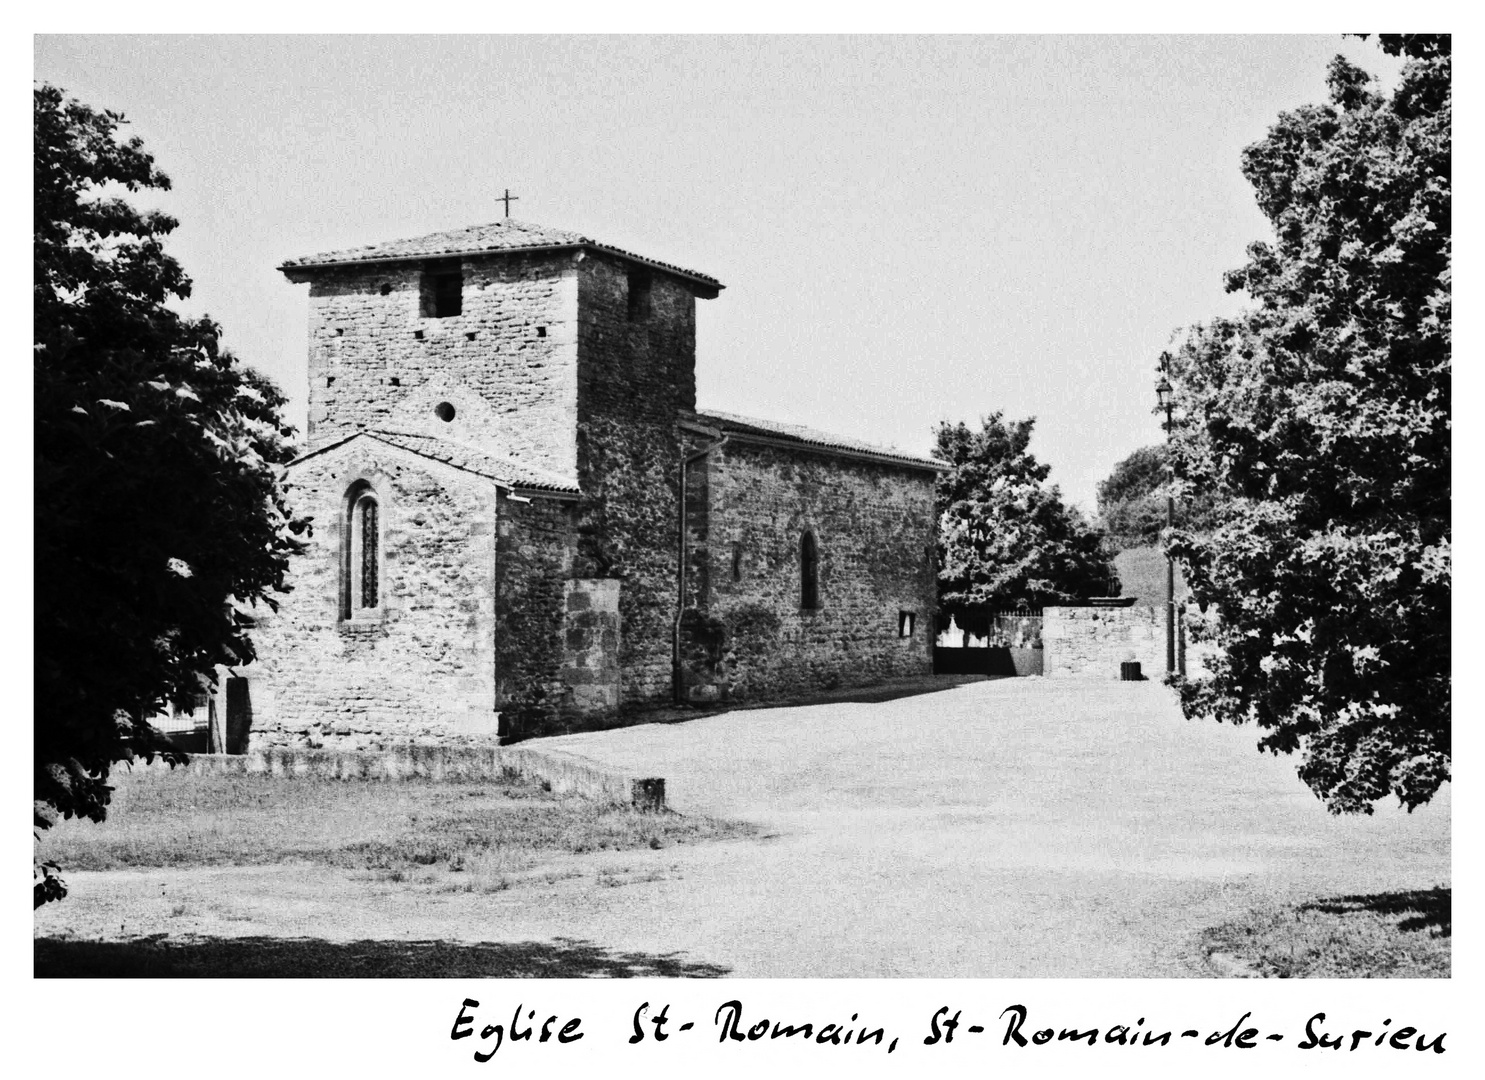 Eglise St-Romain, St-Romain-de-Surieu